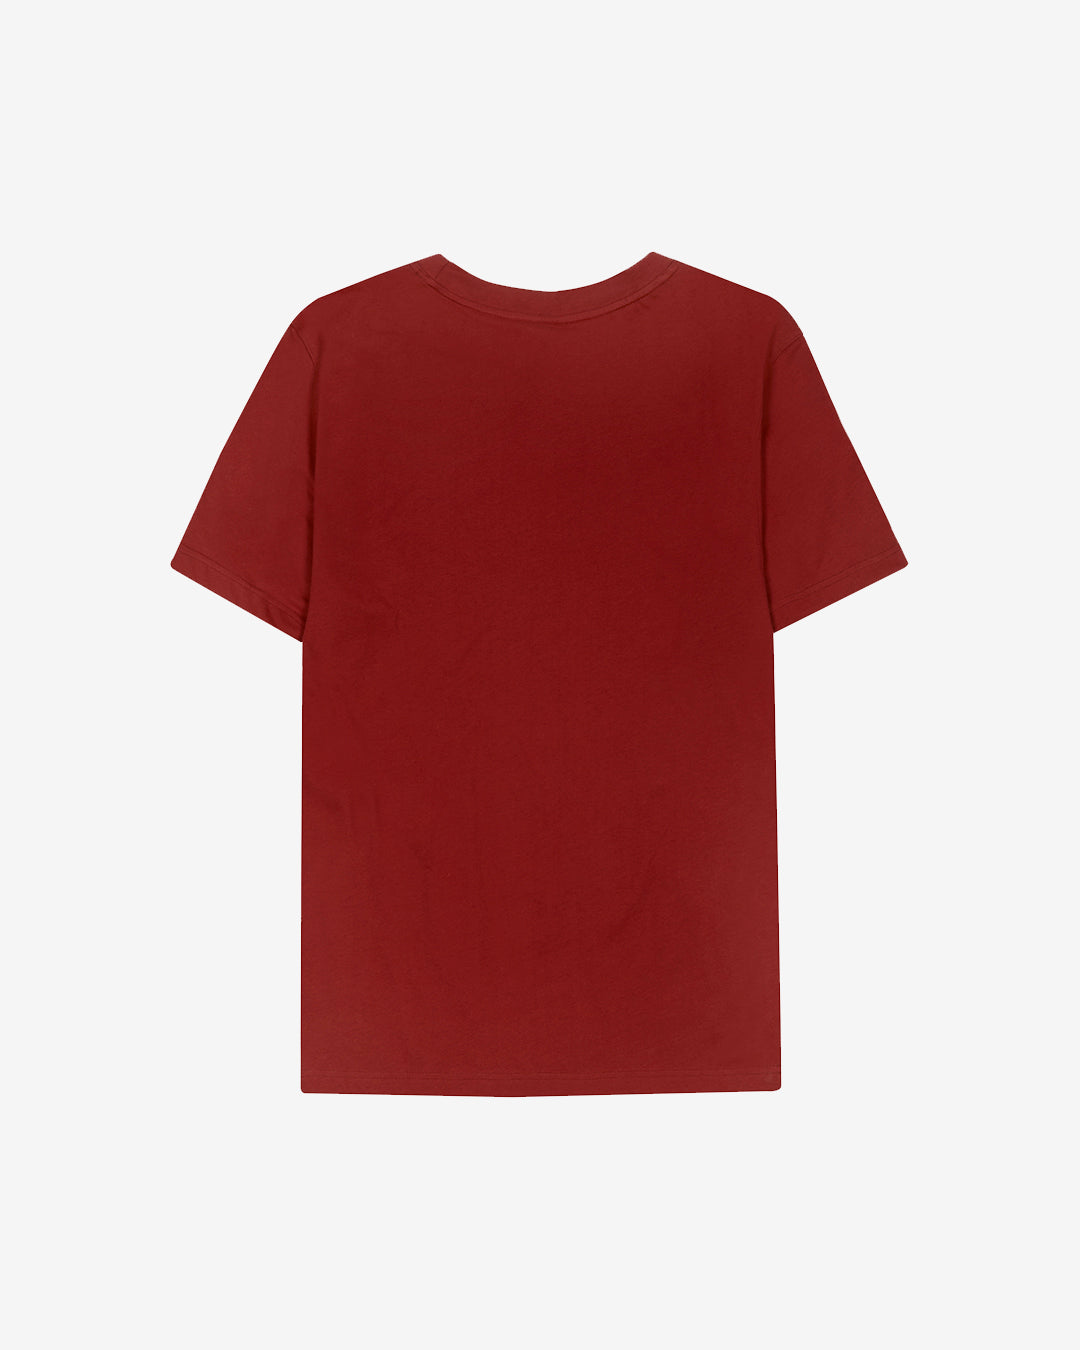 PFC: 002-1 - Women's T-Shirt - Maroon